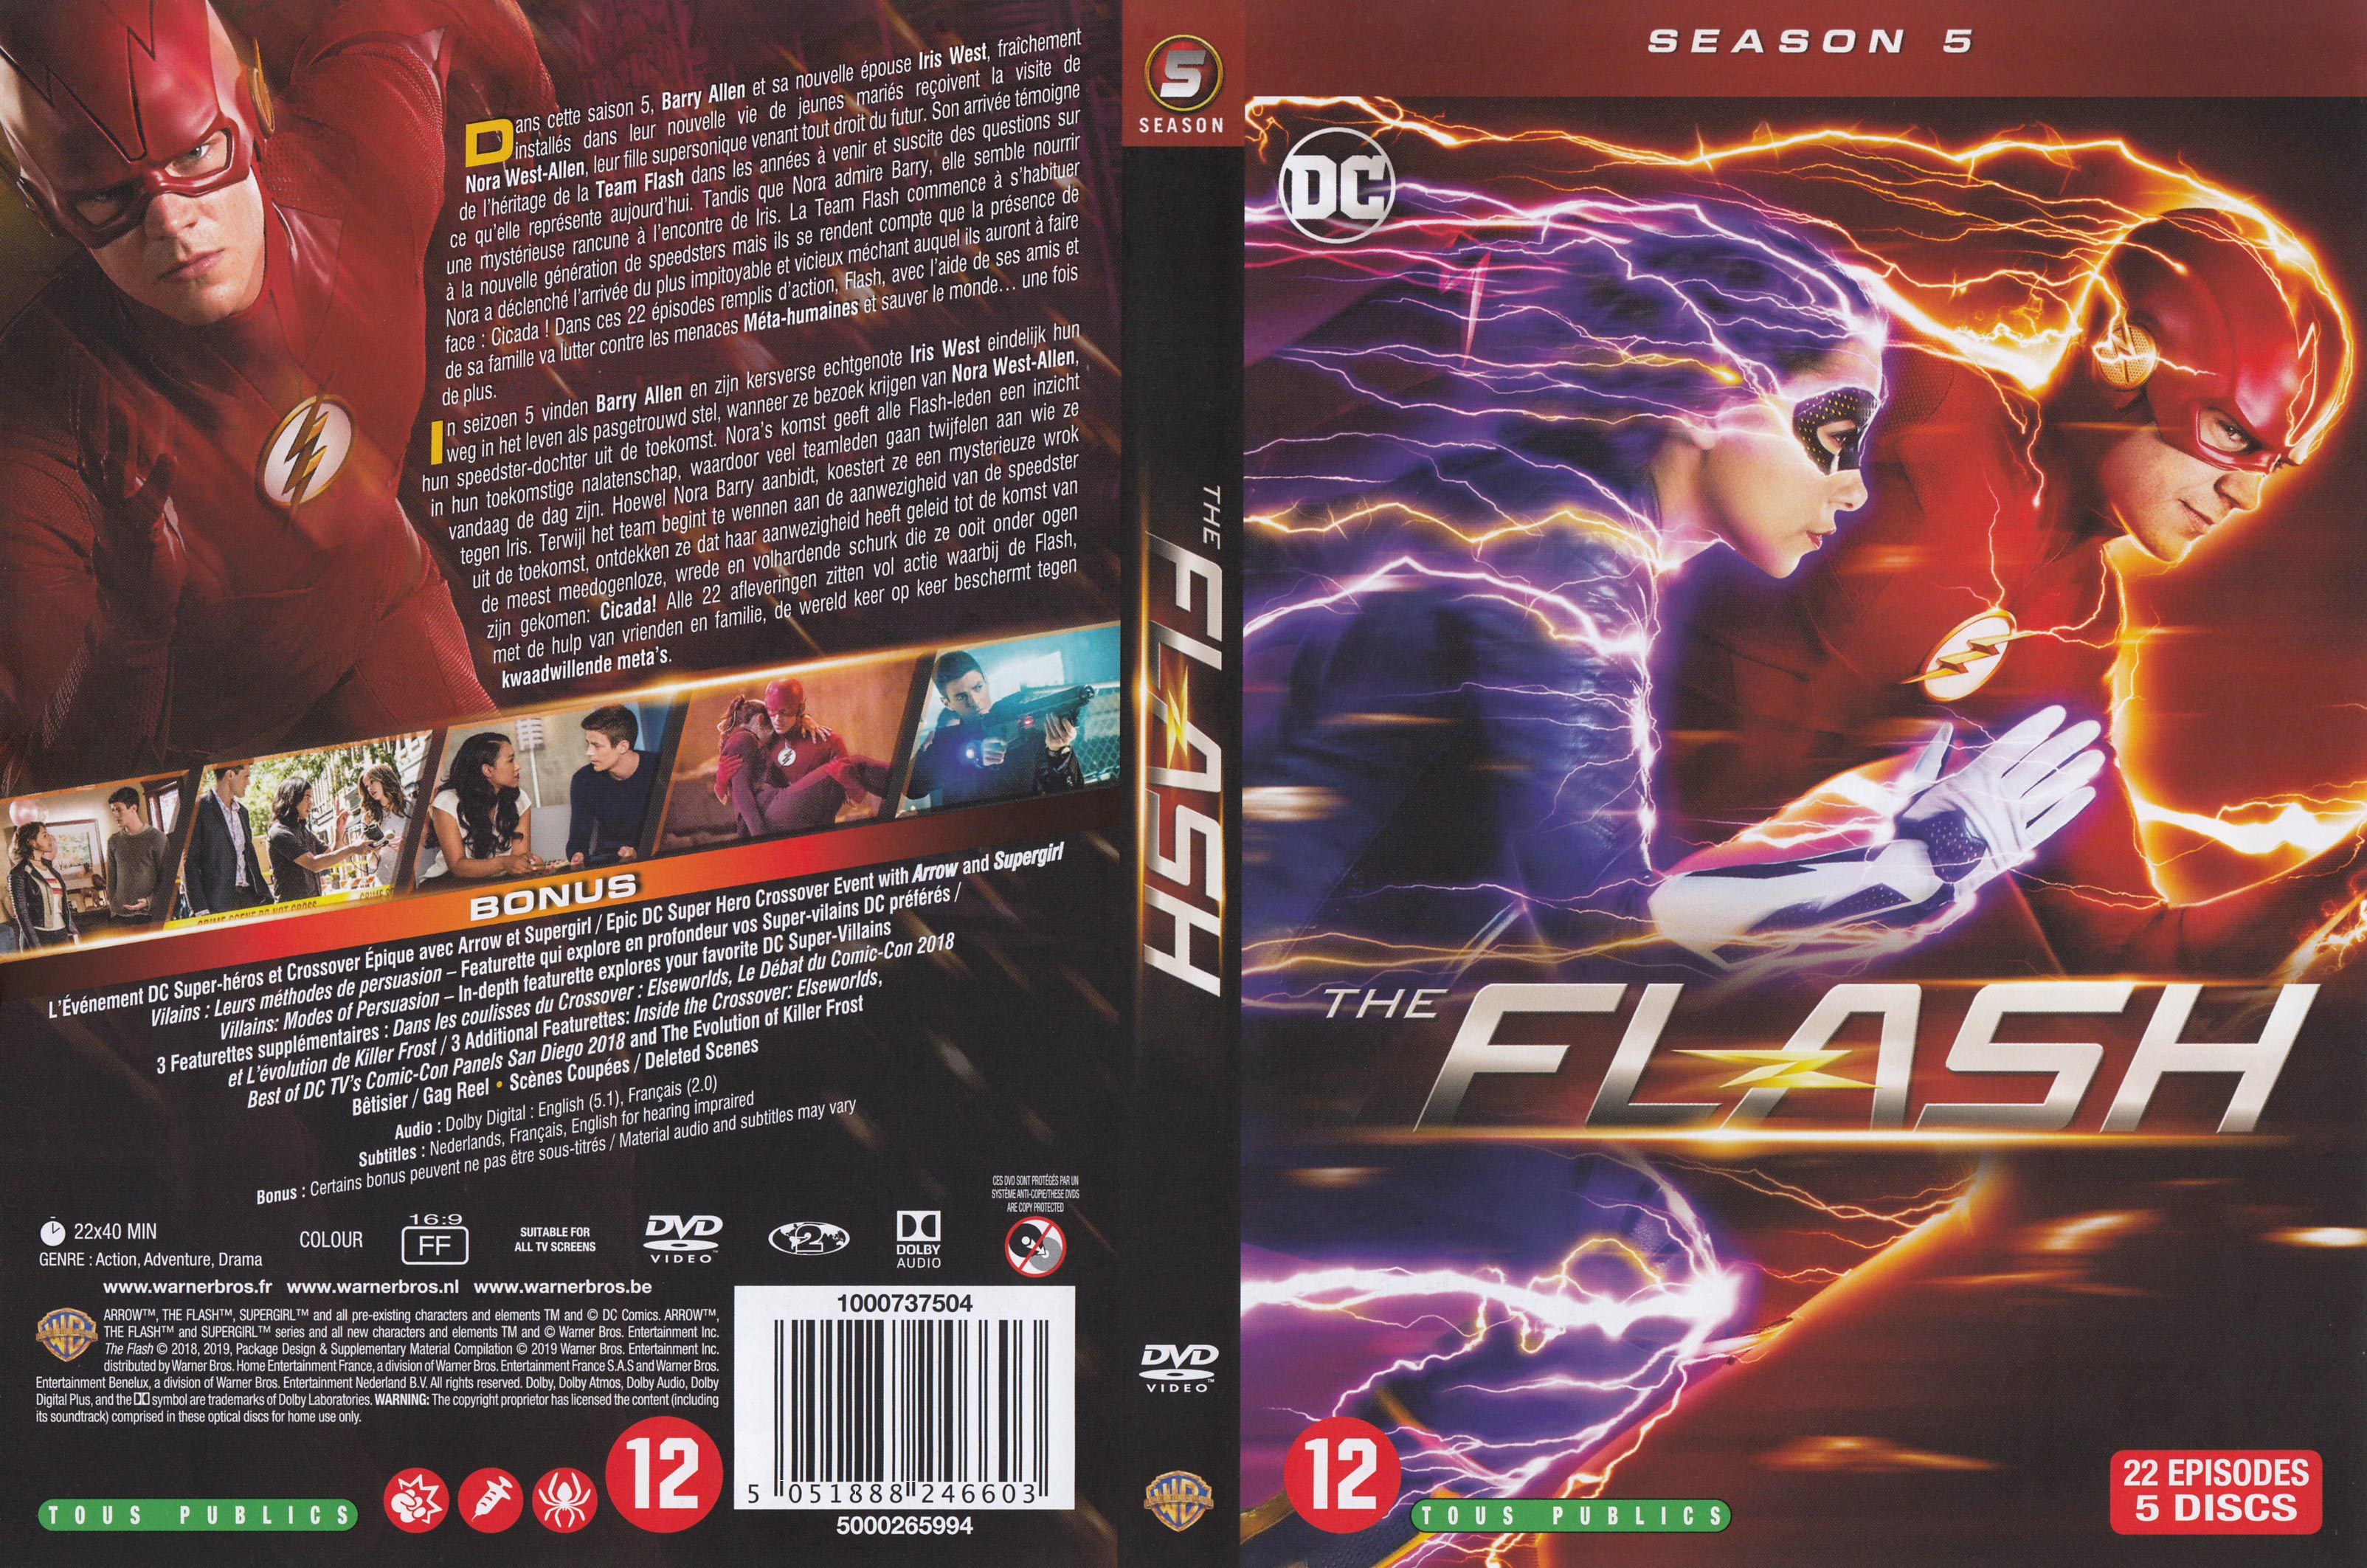 Jaquette DVD The flash Saison 5